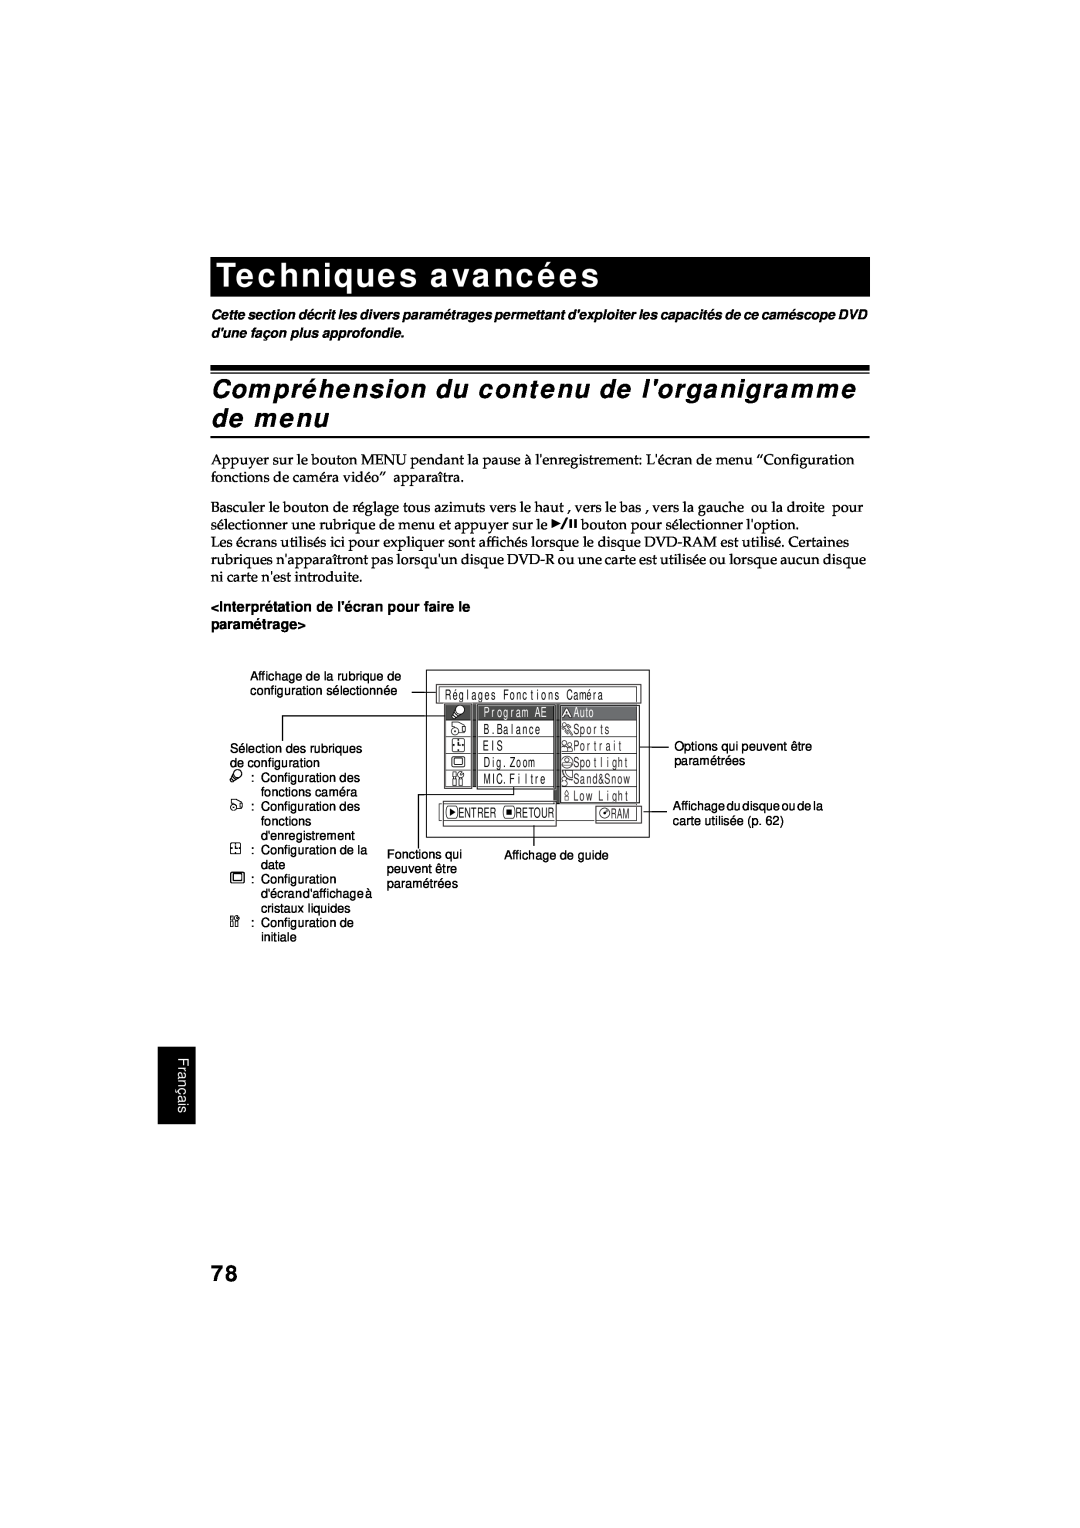 Hitachi DZ-MV380A manual Techniques avancées, Compréhension du contenu de lorganigramme de menu, Français 